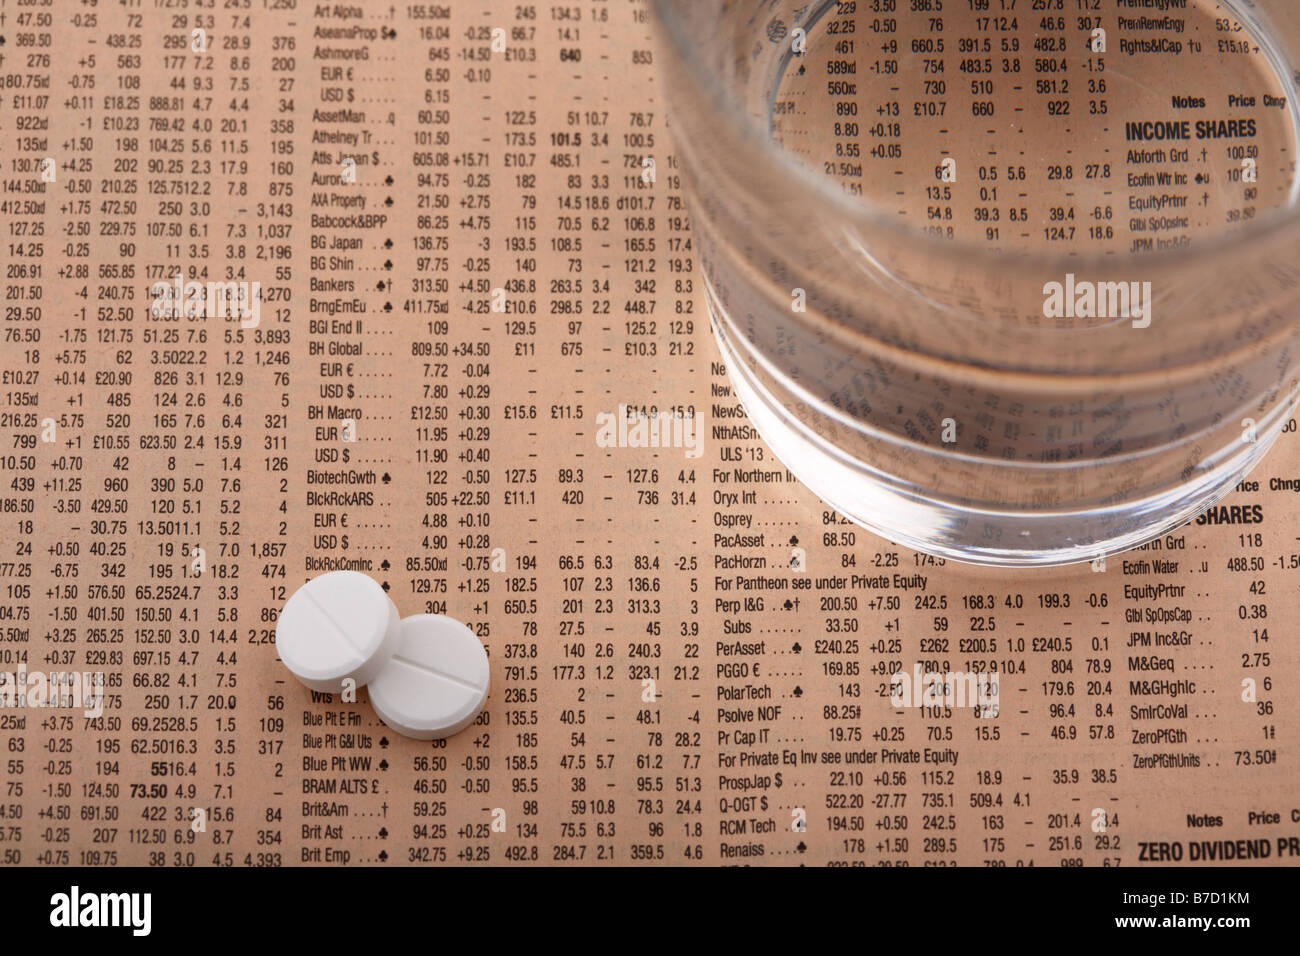 Deux comprimés d'aspirine paracétamol assis à côté d'un verre d'eau sur un exemplaire du Financial Times Banque D'Images